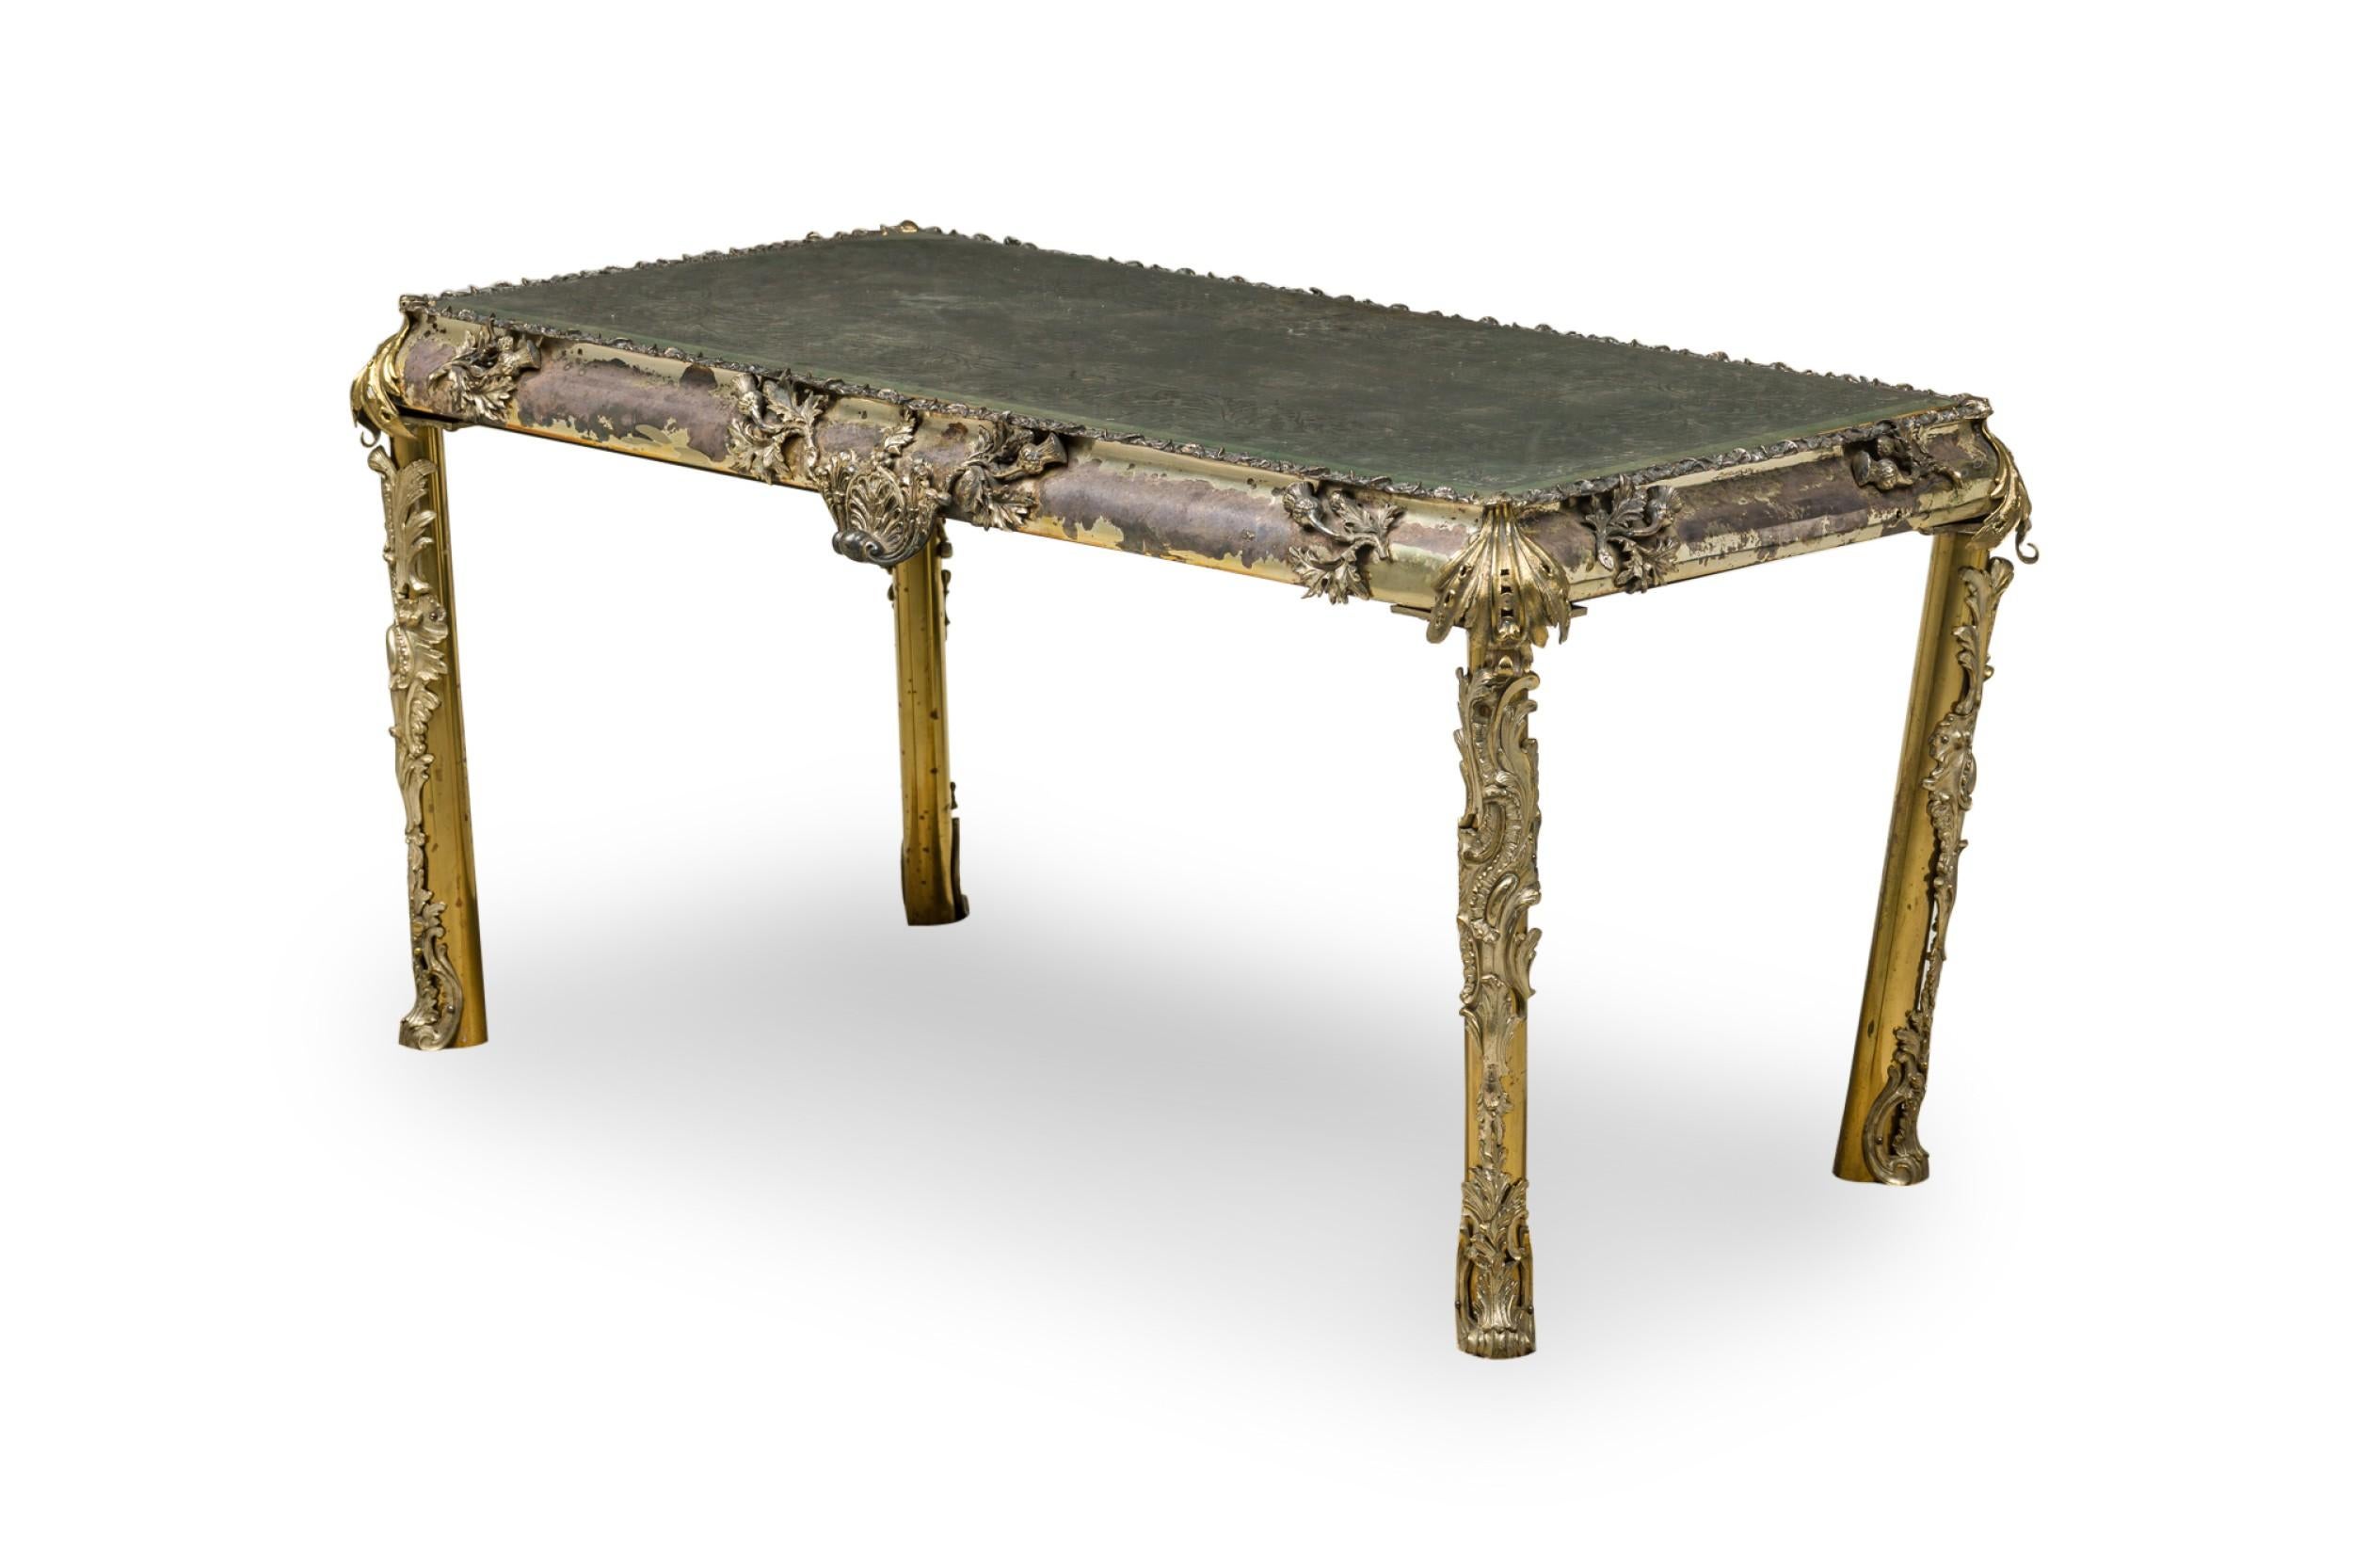 Table basse/de salon rectangulaire de style géorgien anglais (19e siècle), avec un cadre en bronze et en métal argenté, et un plateau en miroir à décor de fleurs et de volutes gravé à l'ancienne.
 

 Oxydation, ternissement et pertes à la surface de